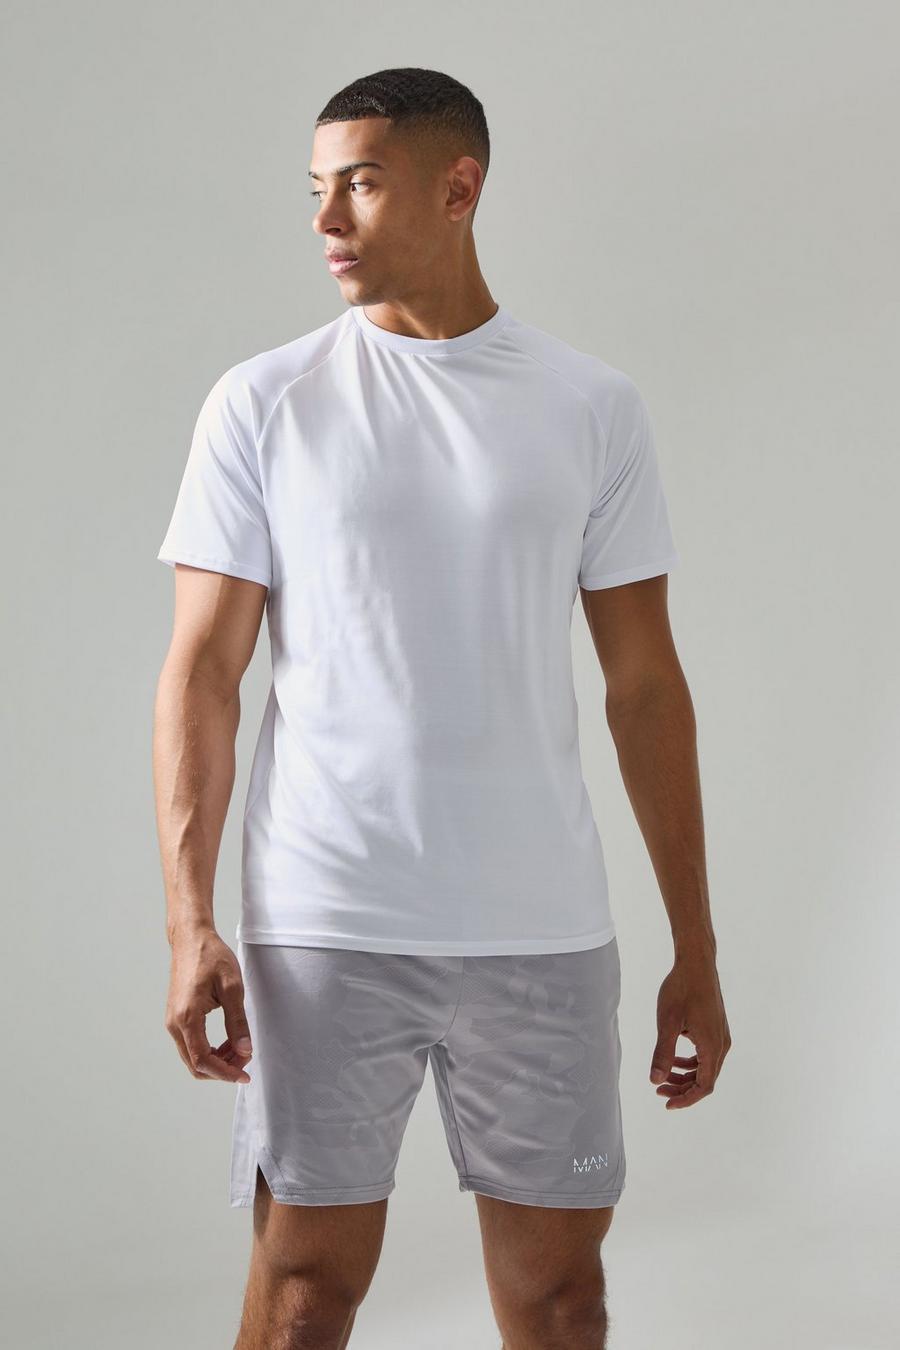 T-shirt leggera Man Active Essentials Gym con maniche raglan, White